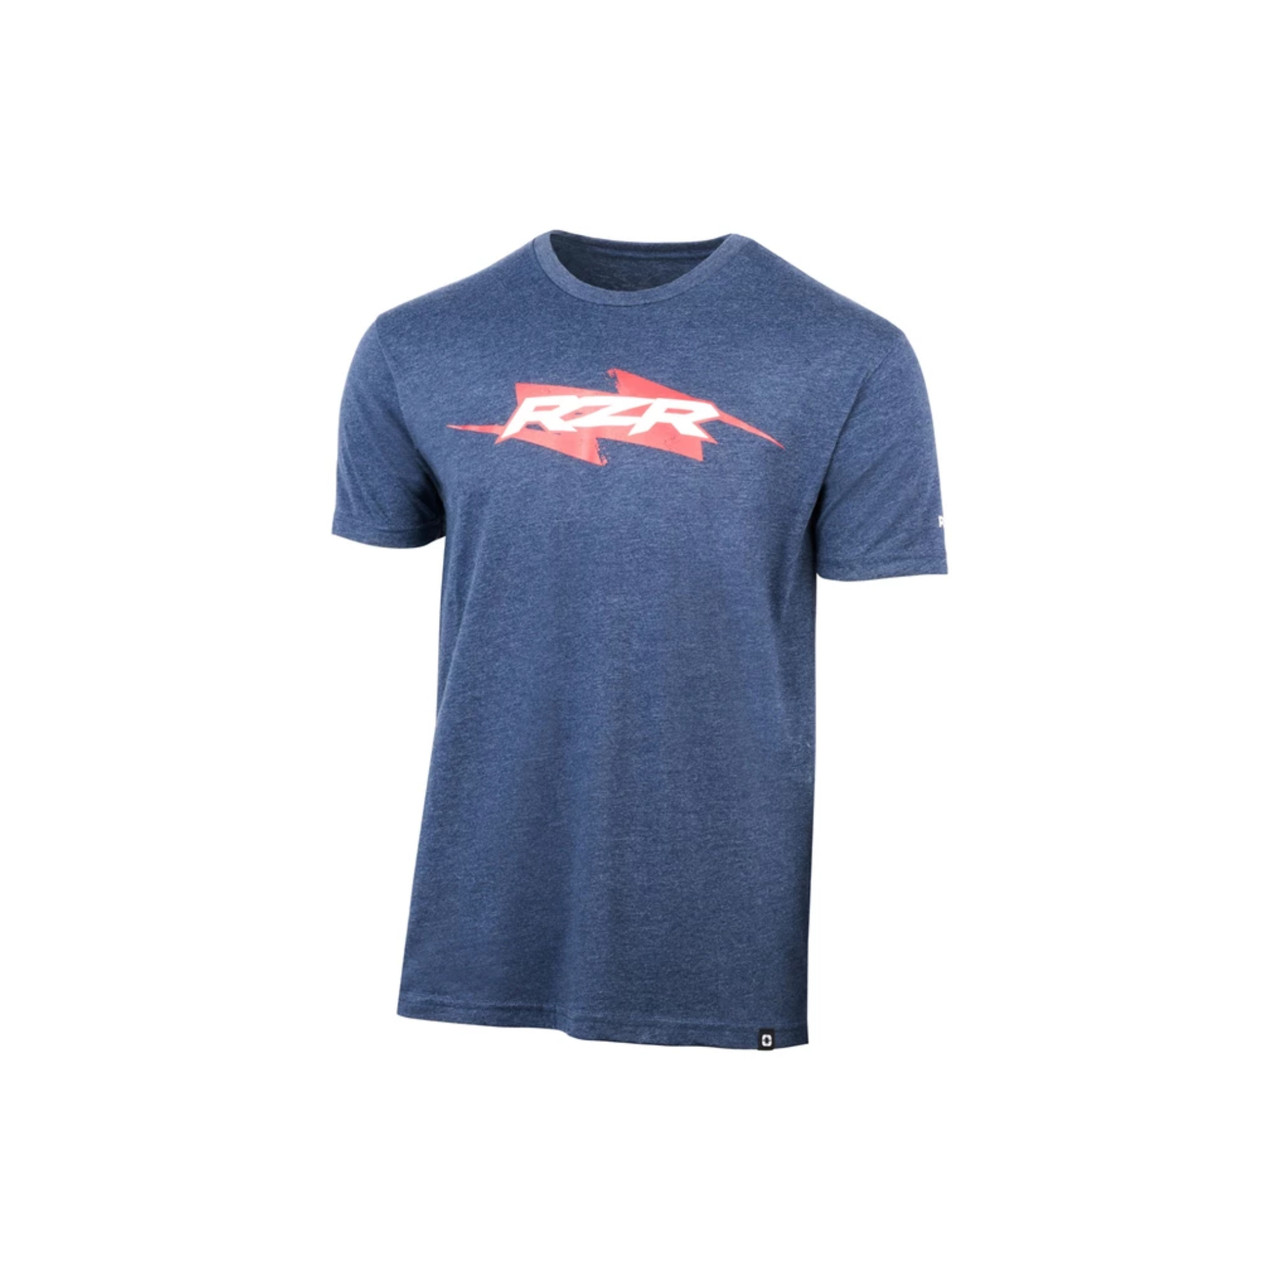 Polaris New OEM Men's Large Bolt RZR Graphic T-Shirt, 100% Cotton, 286251006